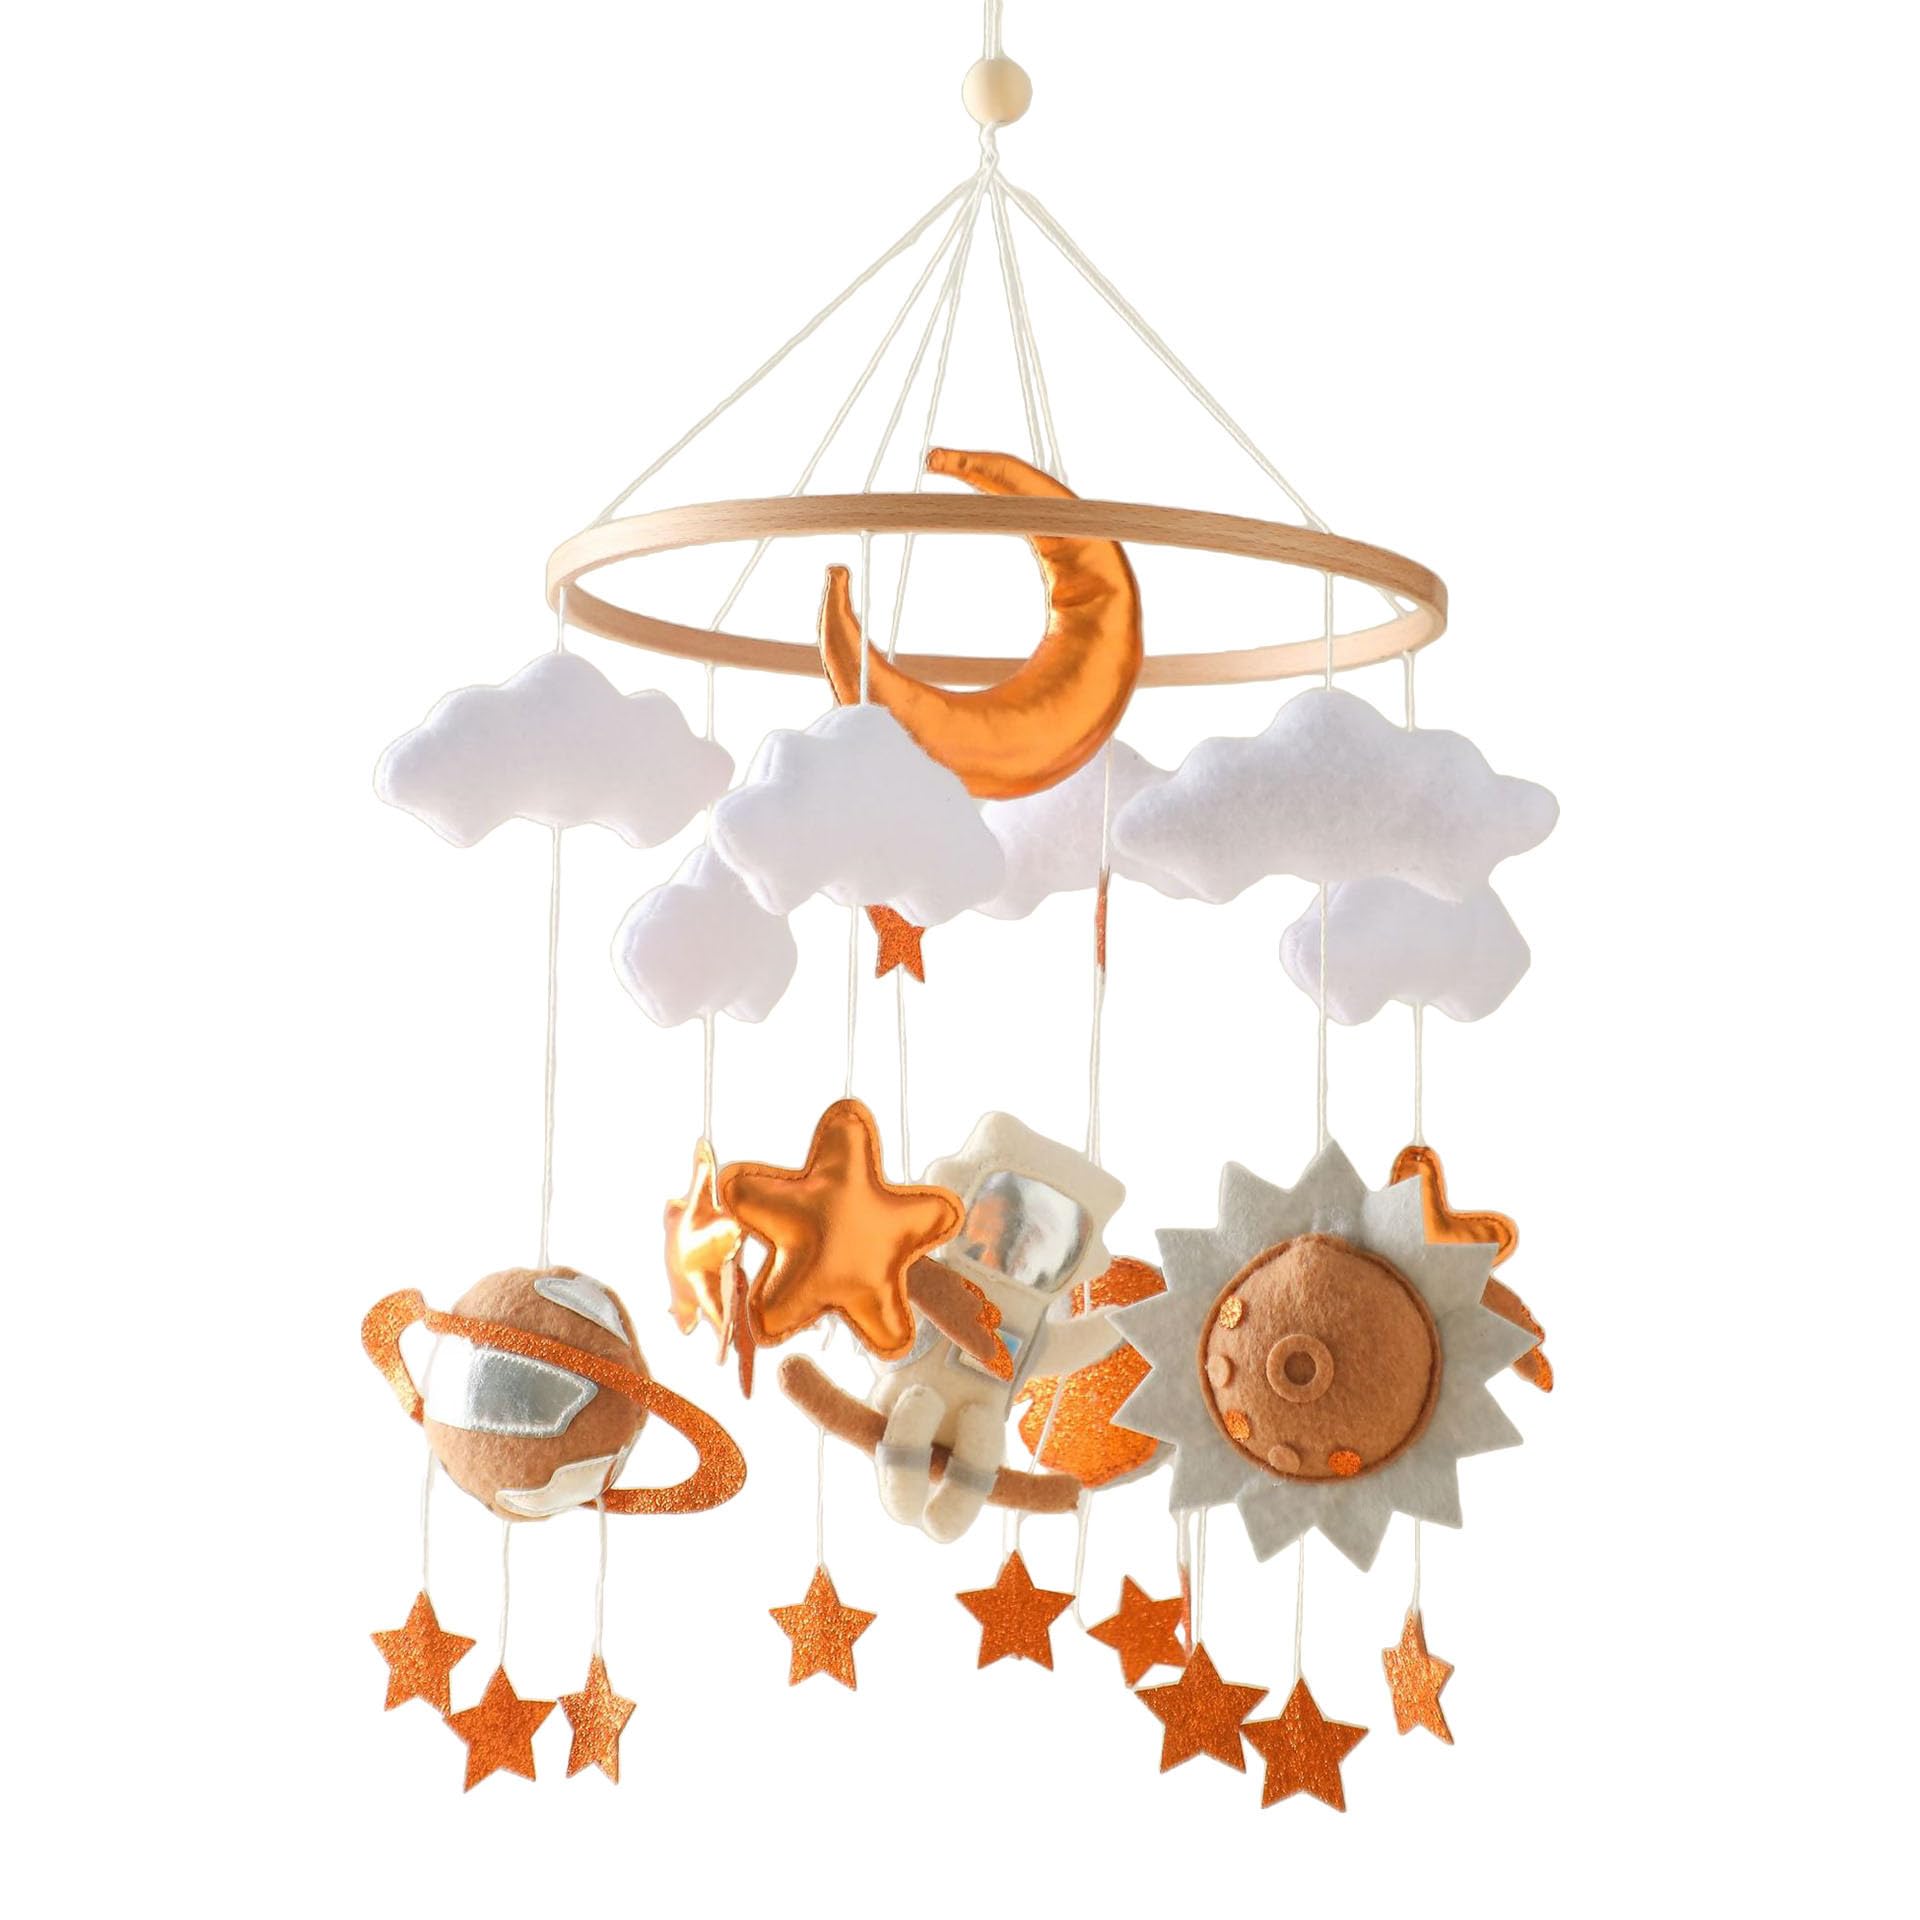 Mobile Baby Windspiele Bettglocke Mit Rakete Und Regenbogen, Handgefertigt Baby Mobile Babybett Für Baby Mädchen Oder Jungen, Beruhigende Einschlafhilfe Spielzeug (Astronaut)